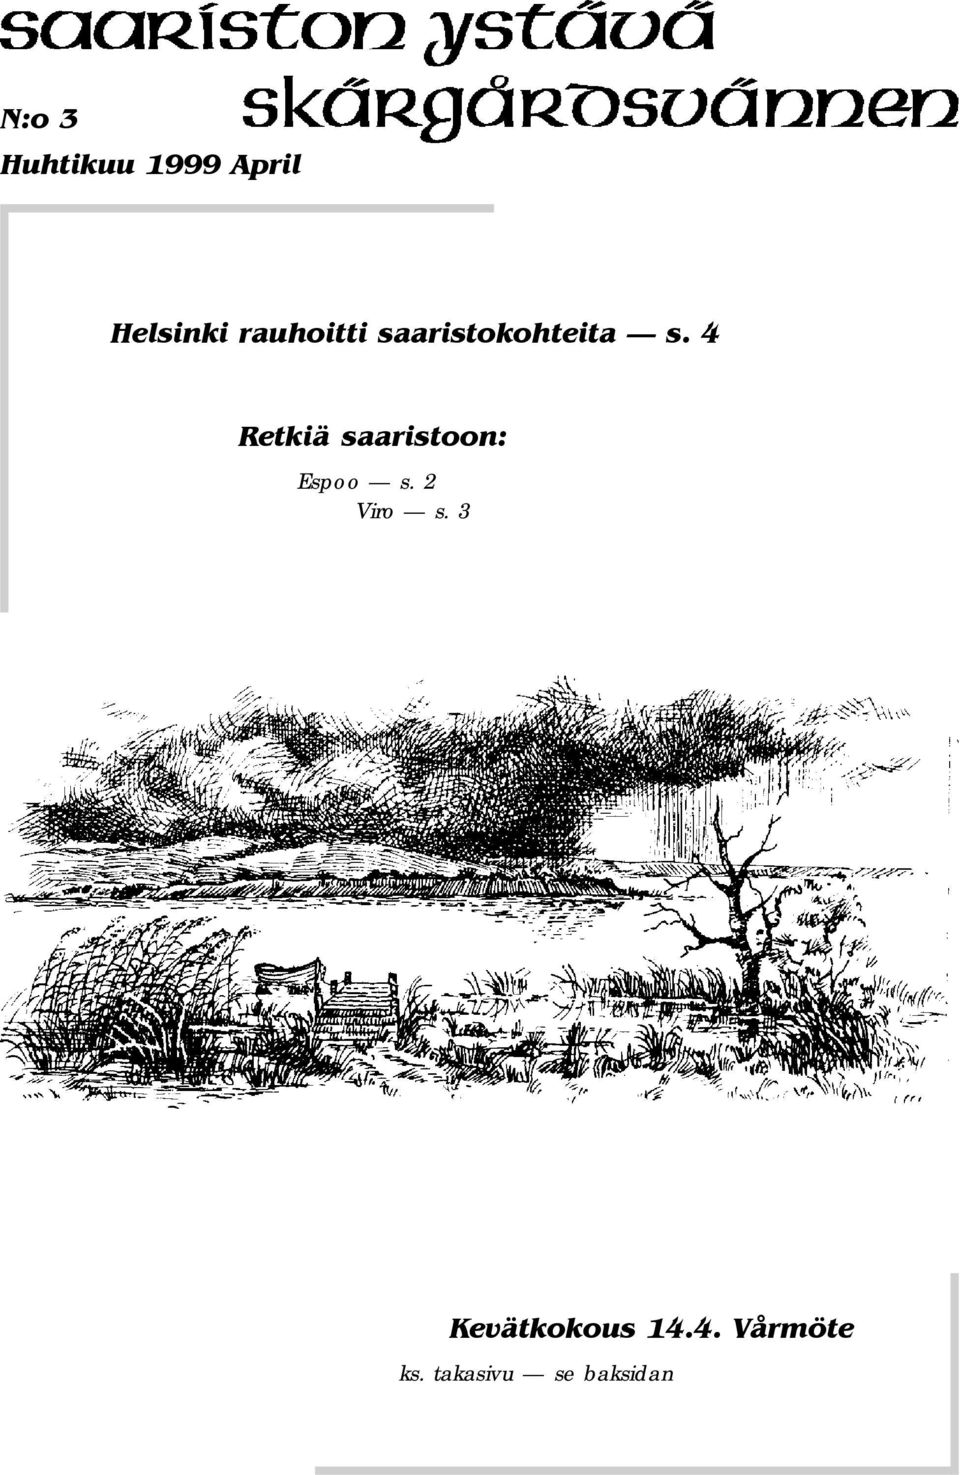 4 Retkiä saaristoon: Espoo s. 2 Viro s.